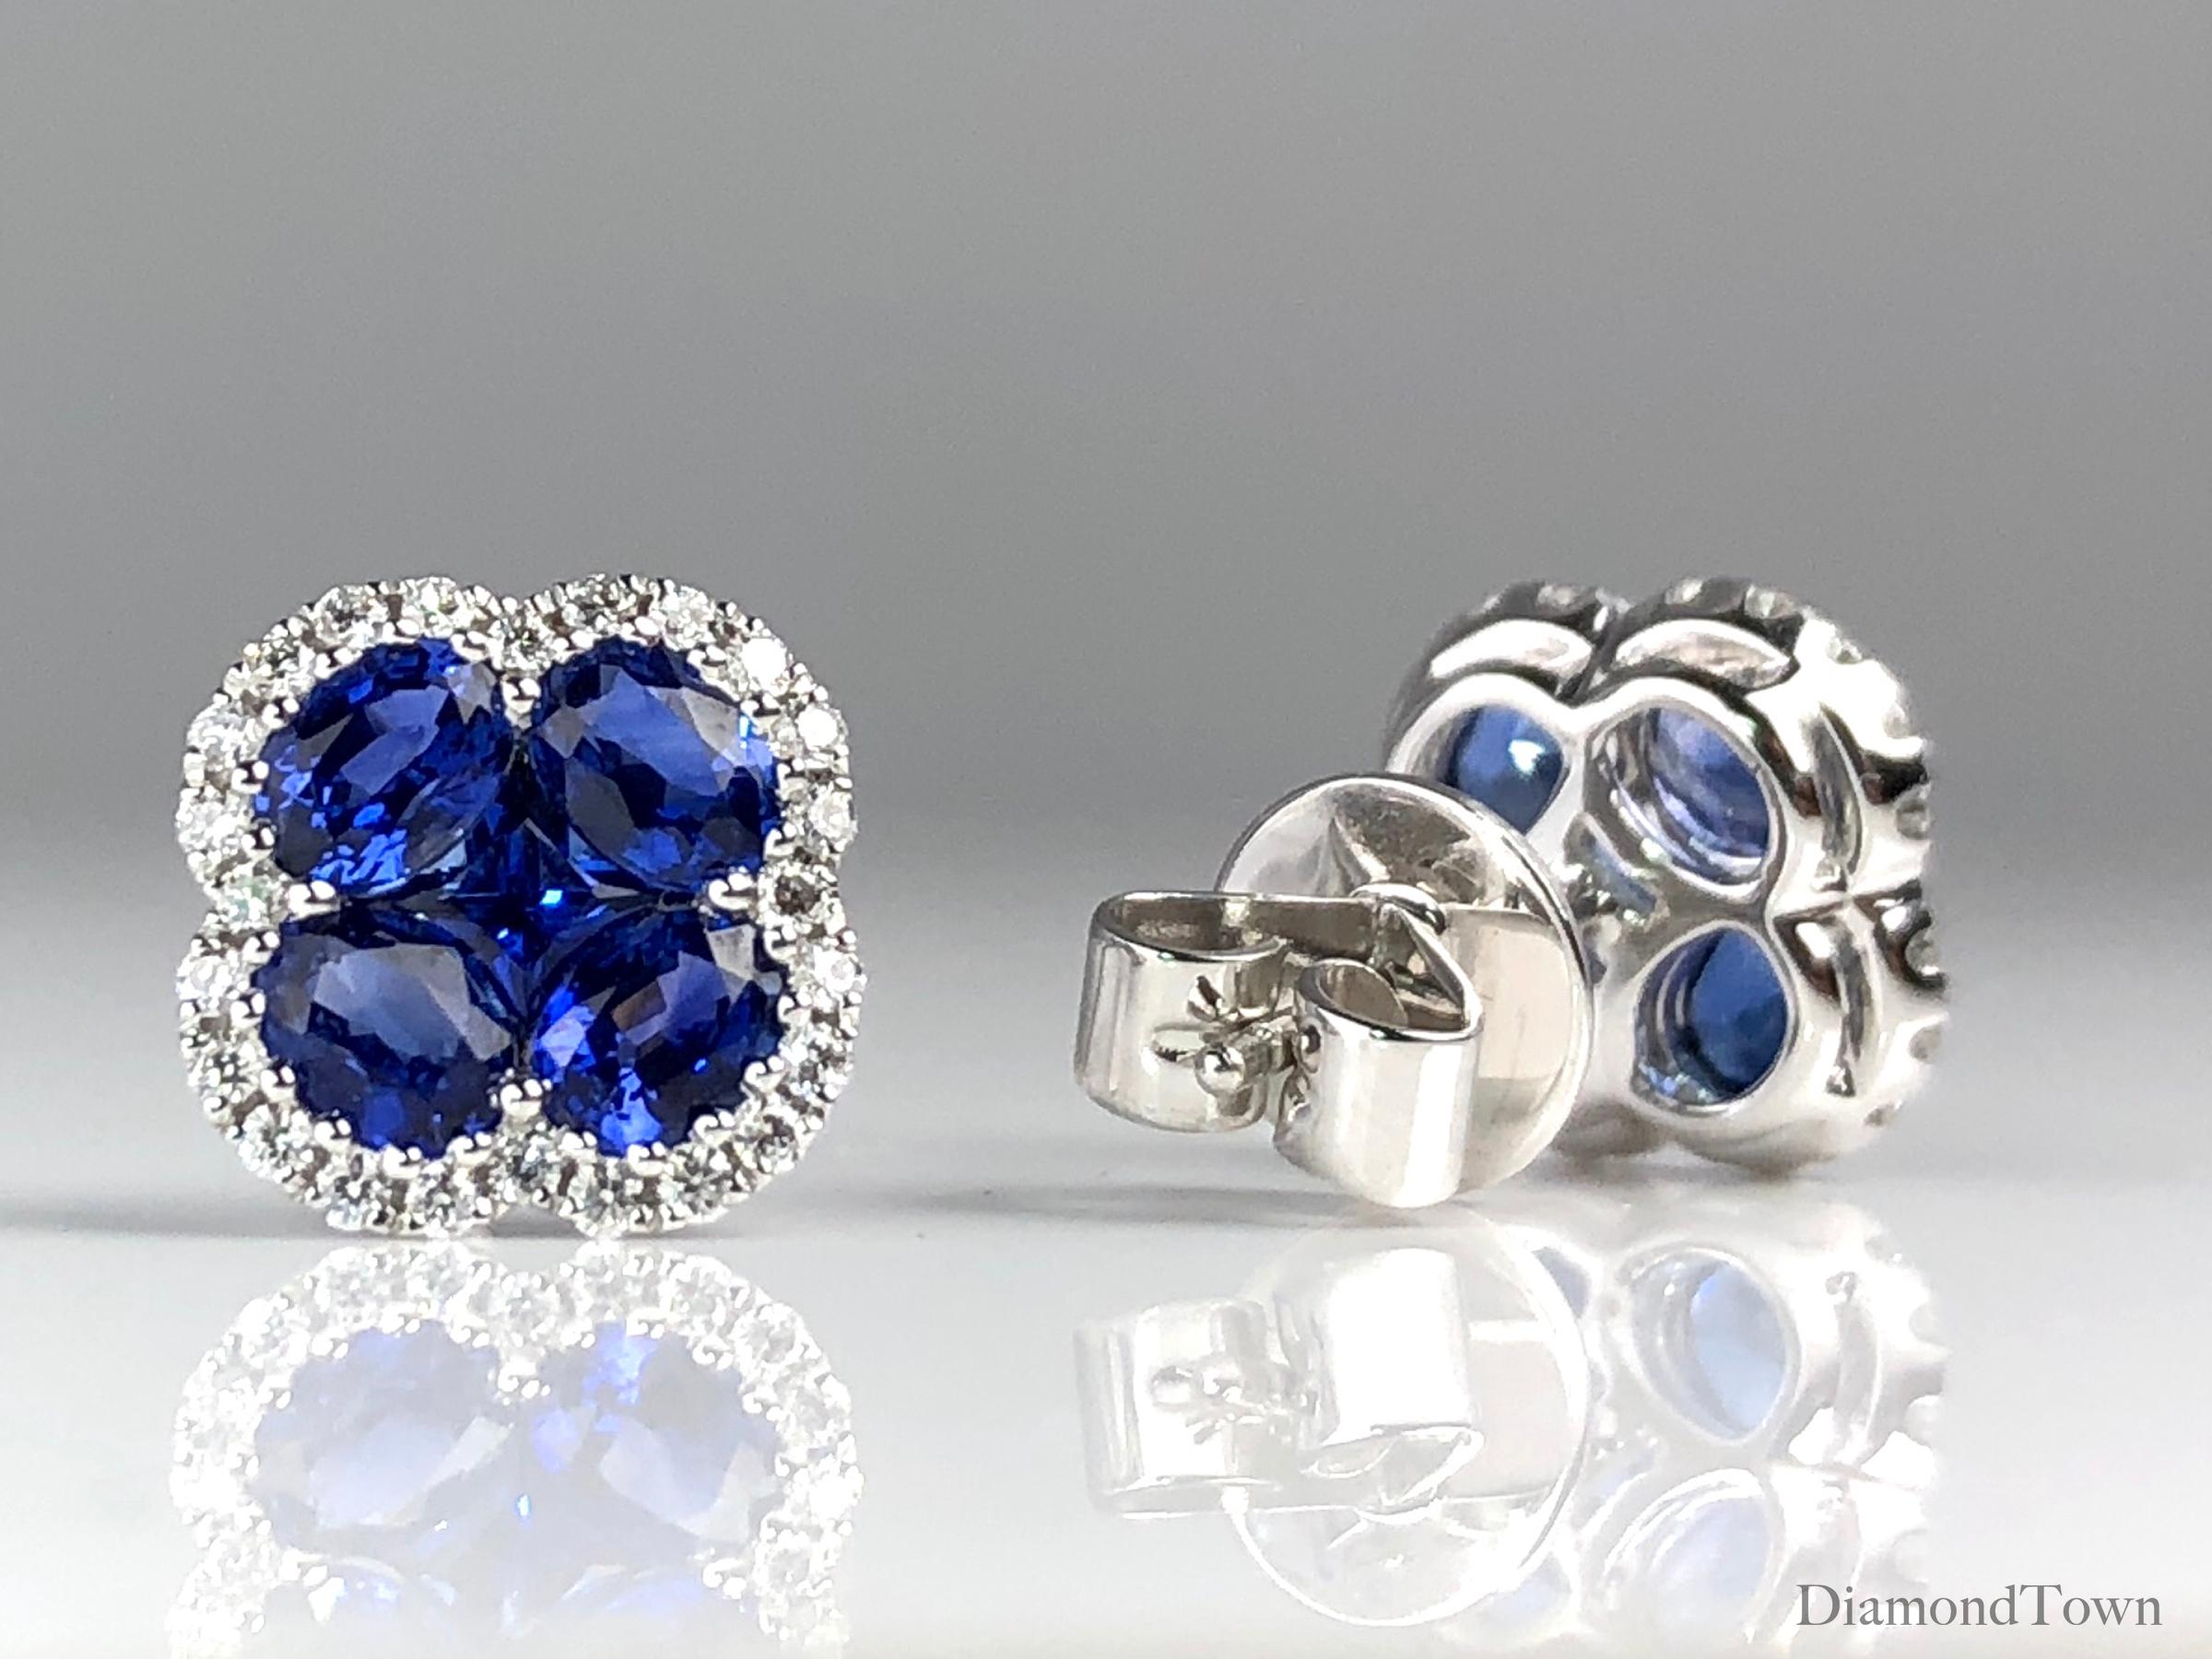 Diese wunderschönen Ohrringe zeigen ein Kleeblattdesign aus vier oval geschliffenen und einem prinzessgeschliffenen lebhaften blauen Saphiren (Gesamtgewicht 1::92 Karat):: umgeben von einem Halo aus runden Diamanten (Gesamtgewicht 0::23 Karat). 

Zu